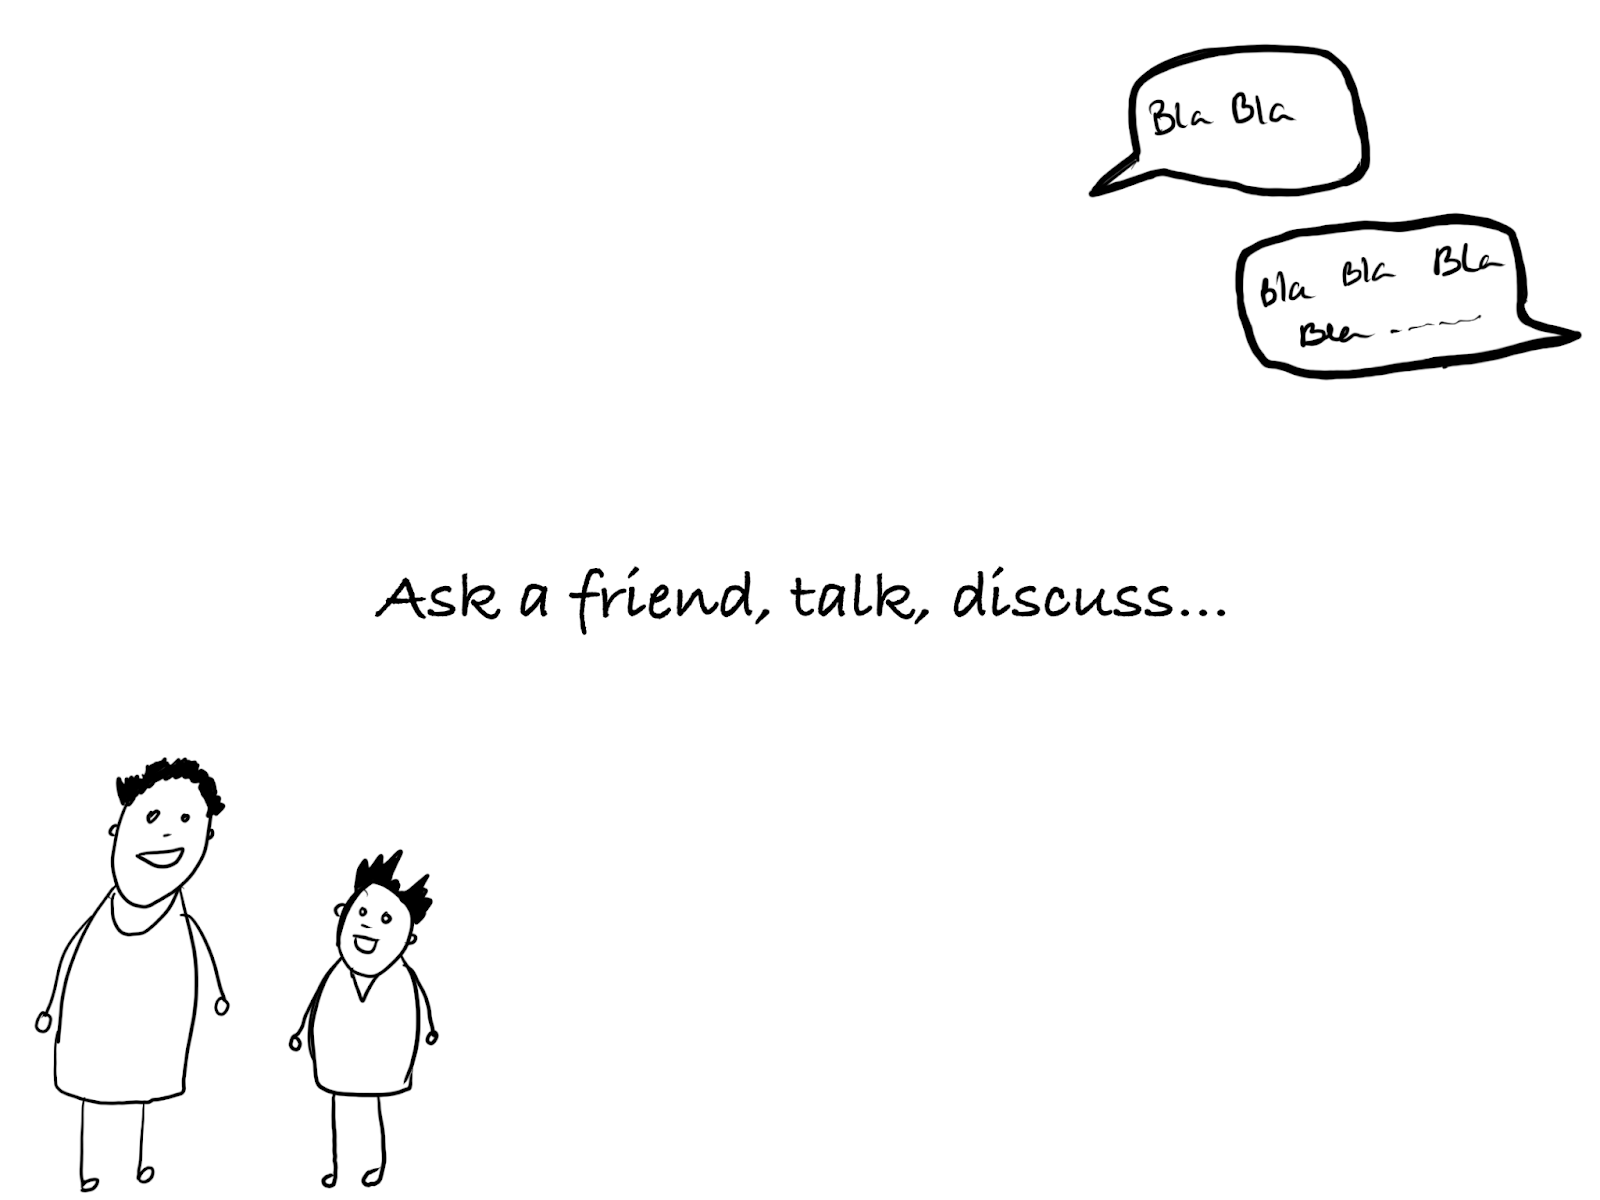 Ask a friend